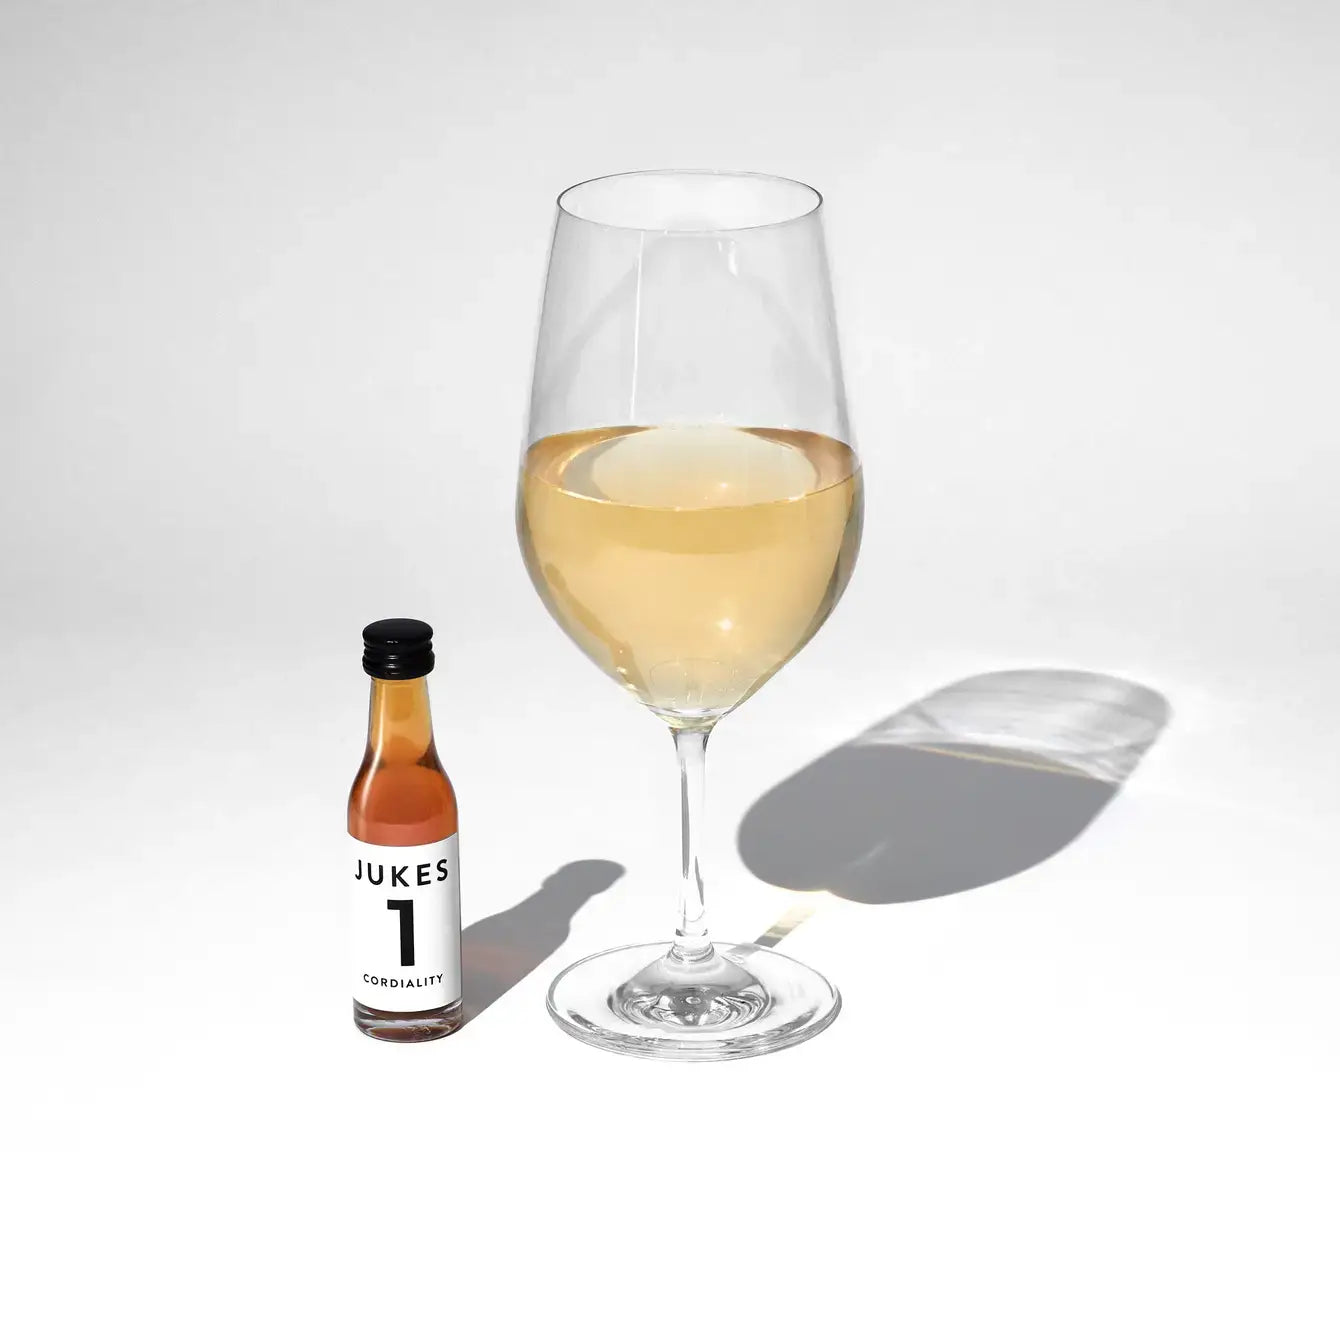 Jukes 1 - The 'White' - Single bottle 30ml